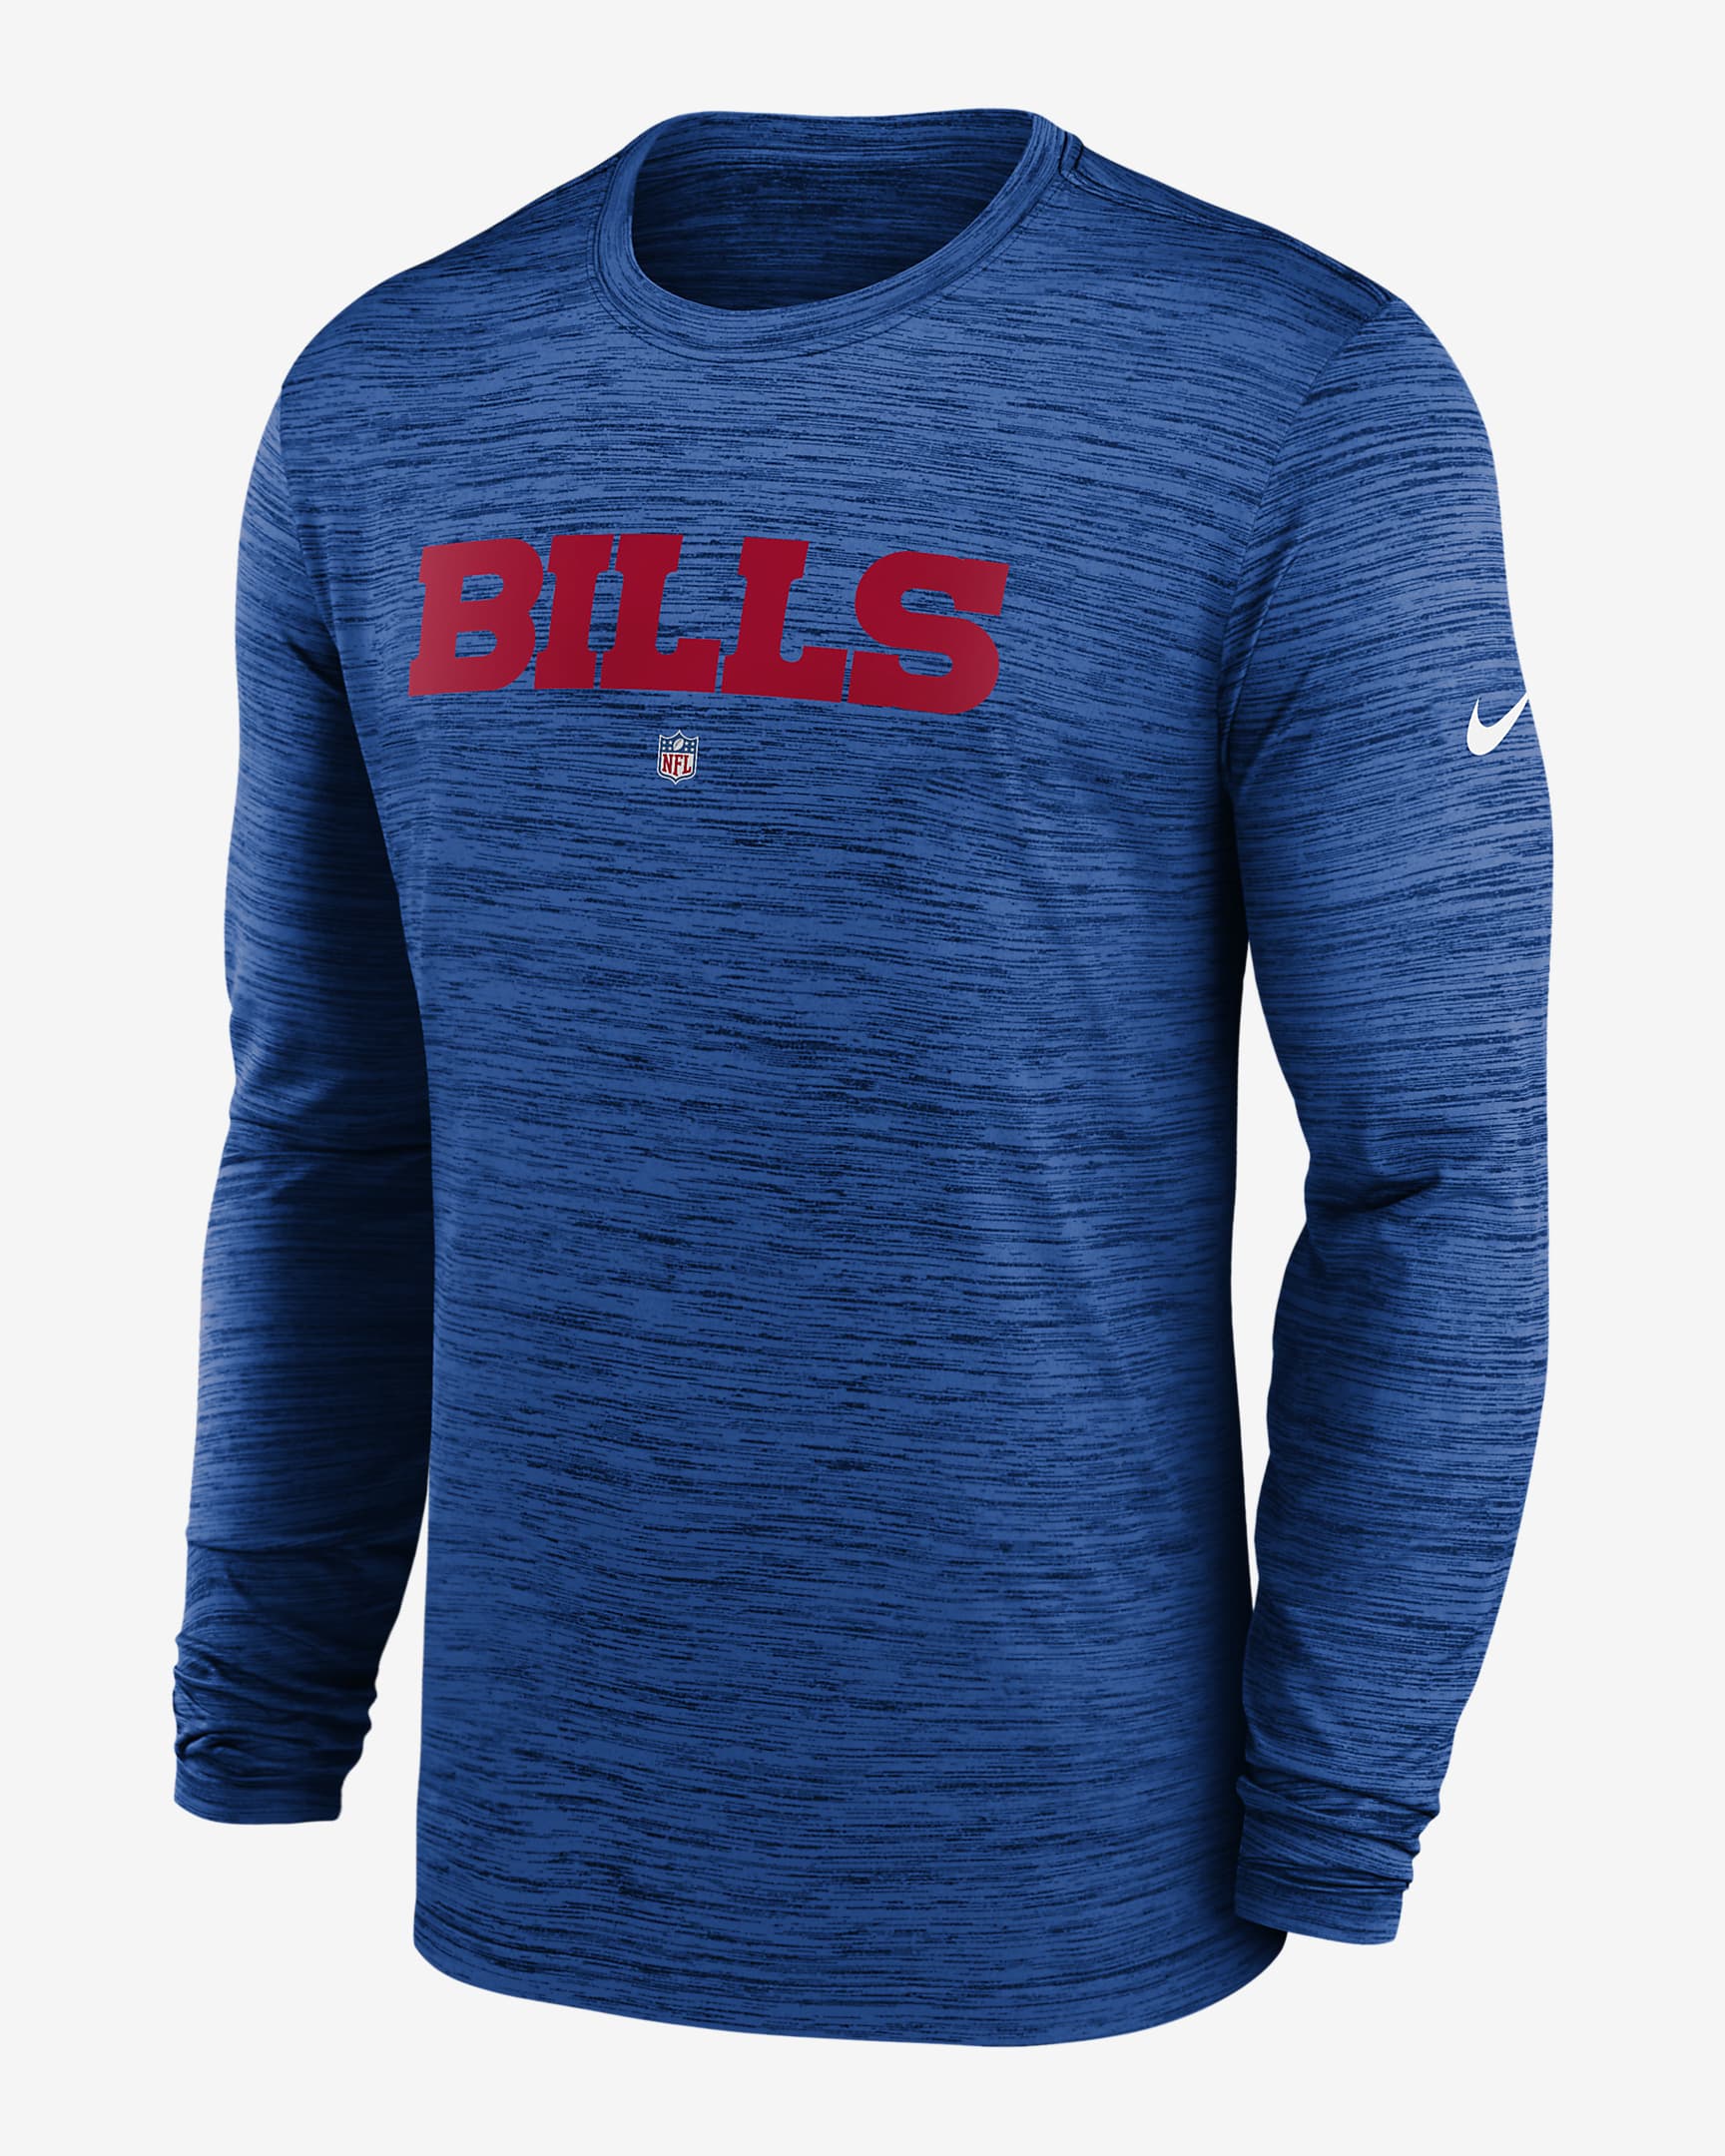 Nike Dri-FIT Sideline Velocity (NFL Buffalo Bills) Men's Long-Sleeve T ...